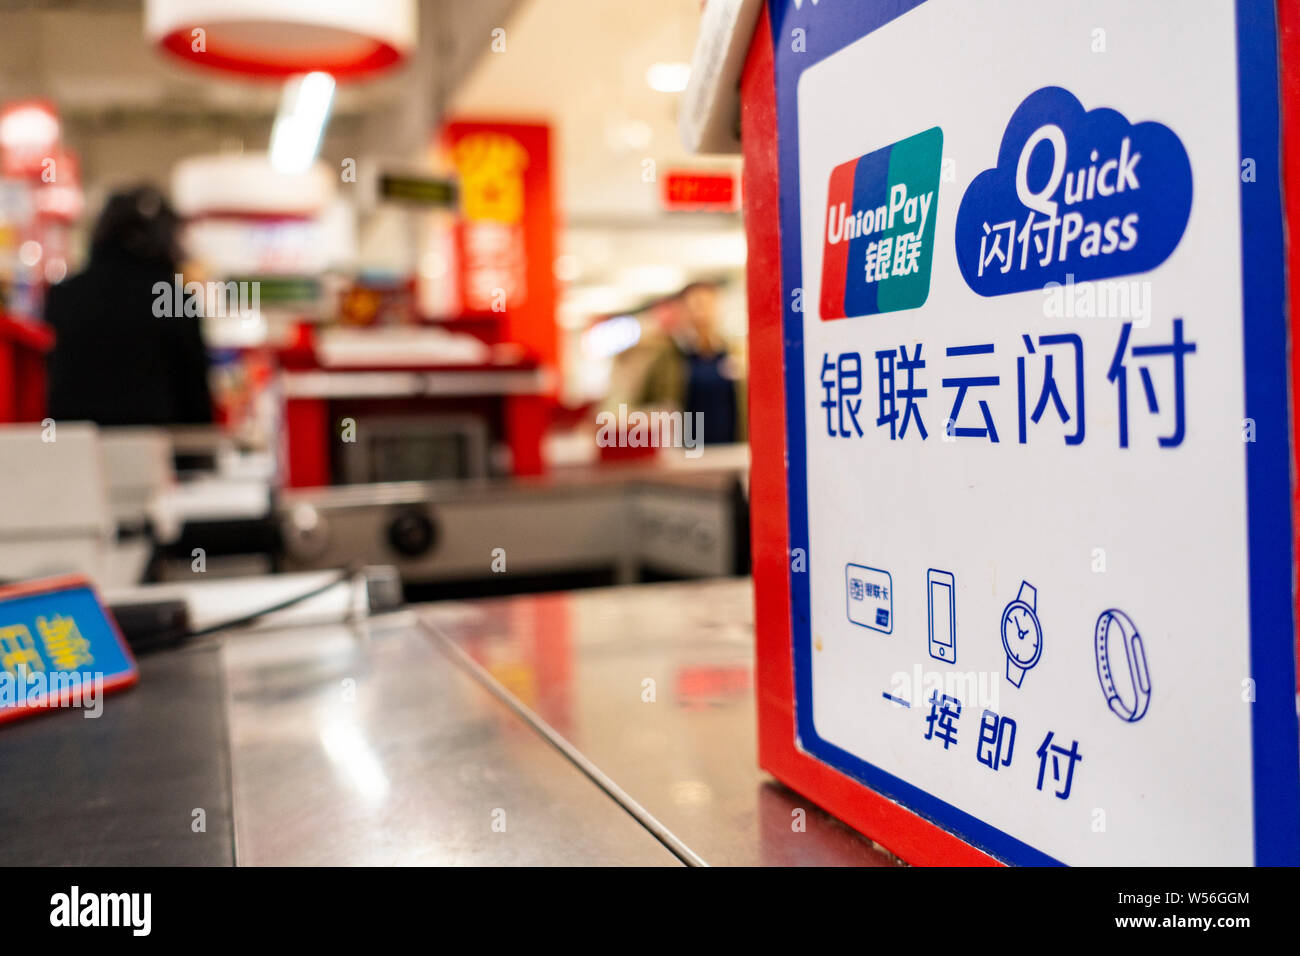 --FILE--une signalisation de China UnionPay est vu dans un supermarché à Shanghai, Chine, le 16 février 2019. Fournisseur de services financiers chinois UnionPay pledg Banque D'Images